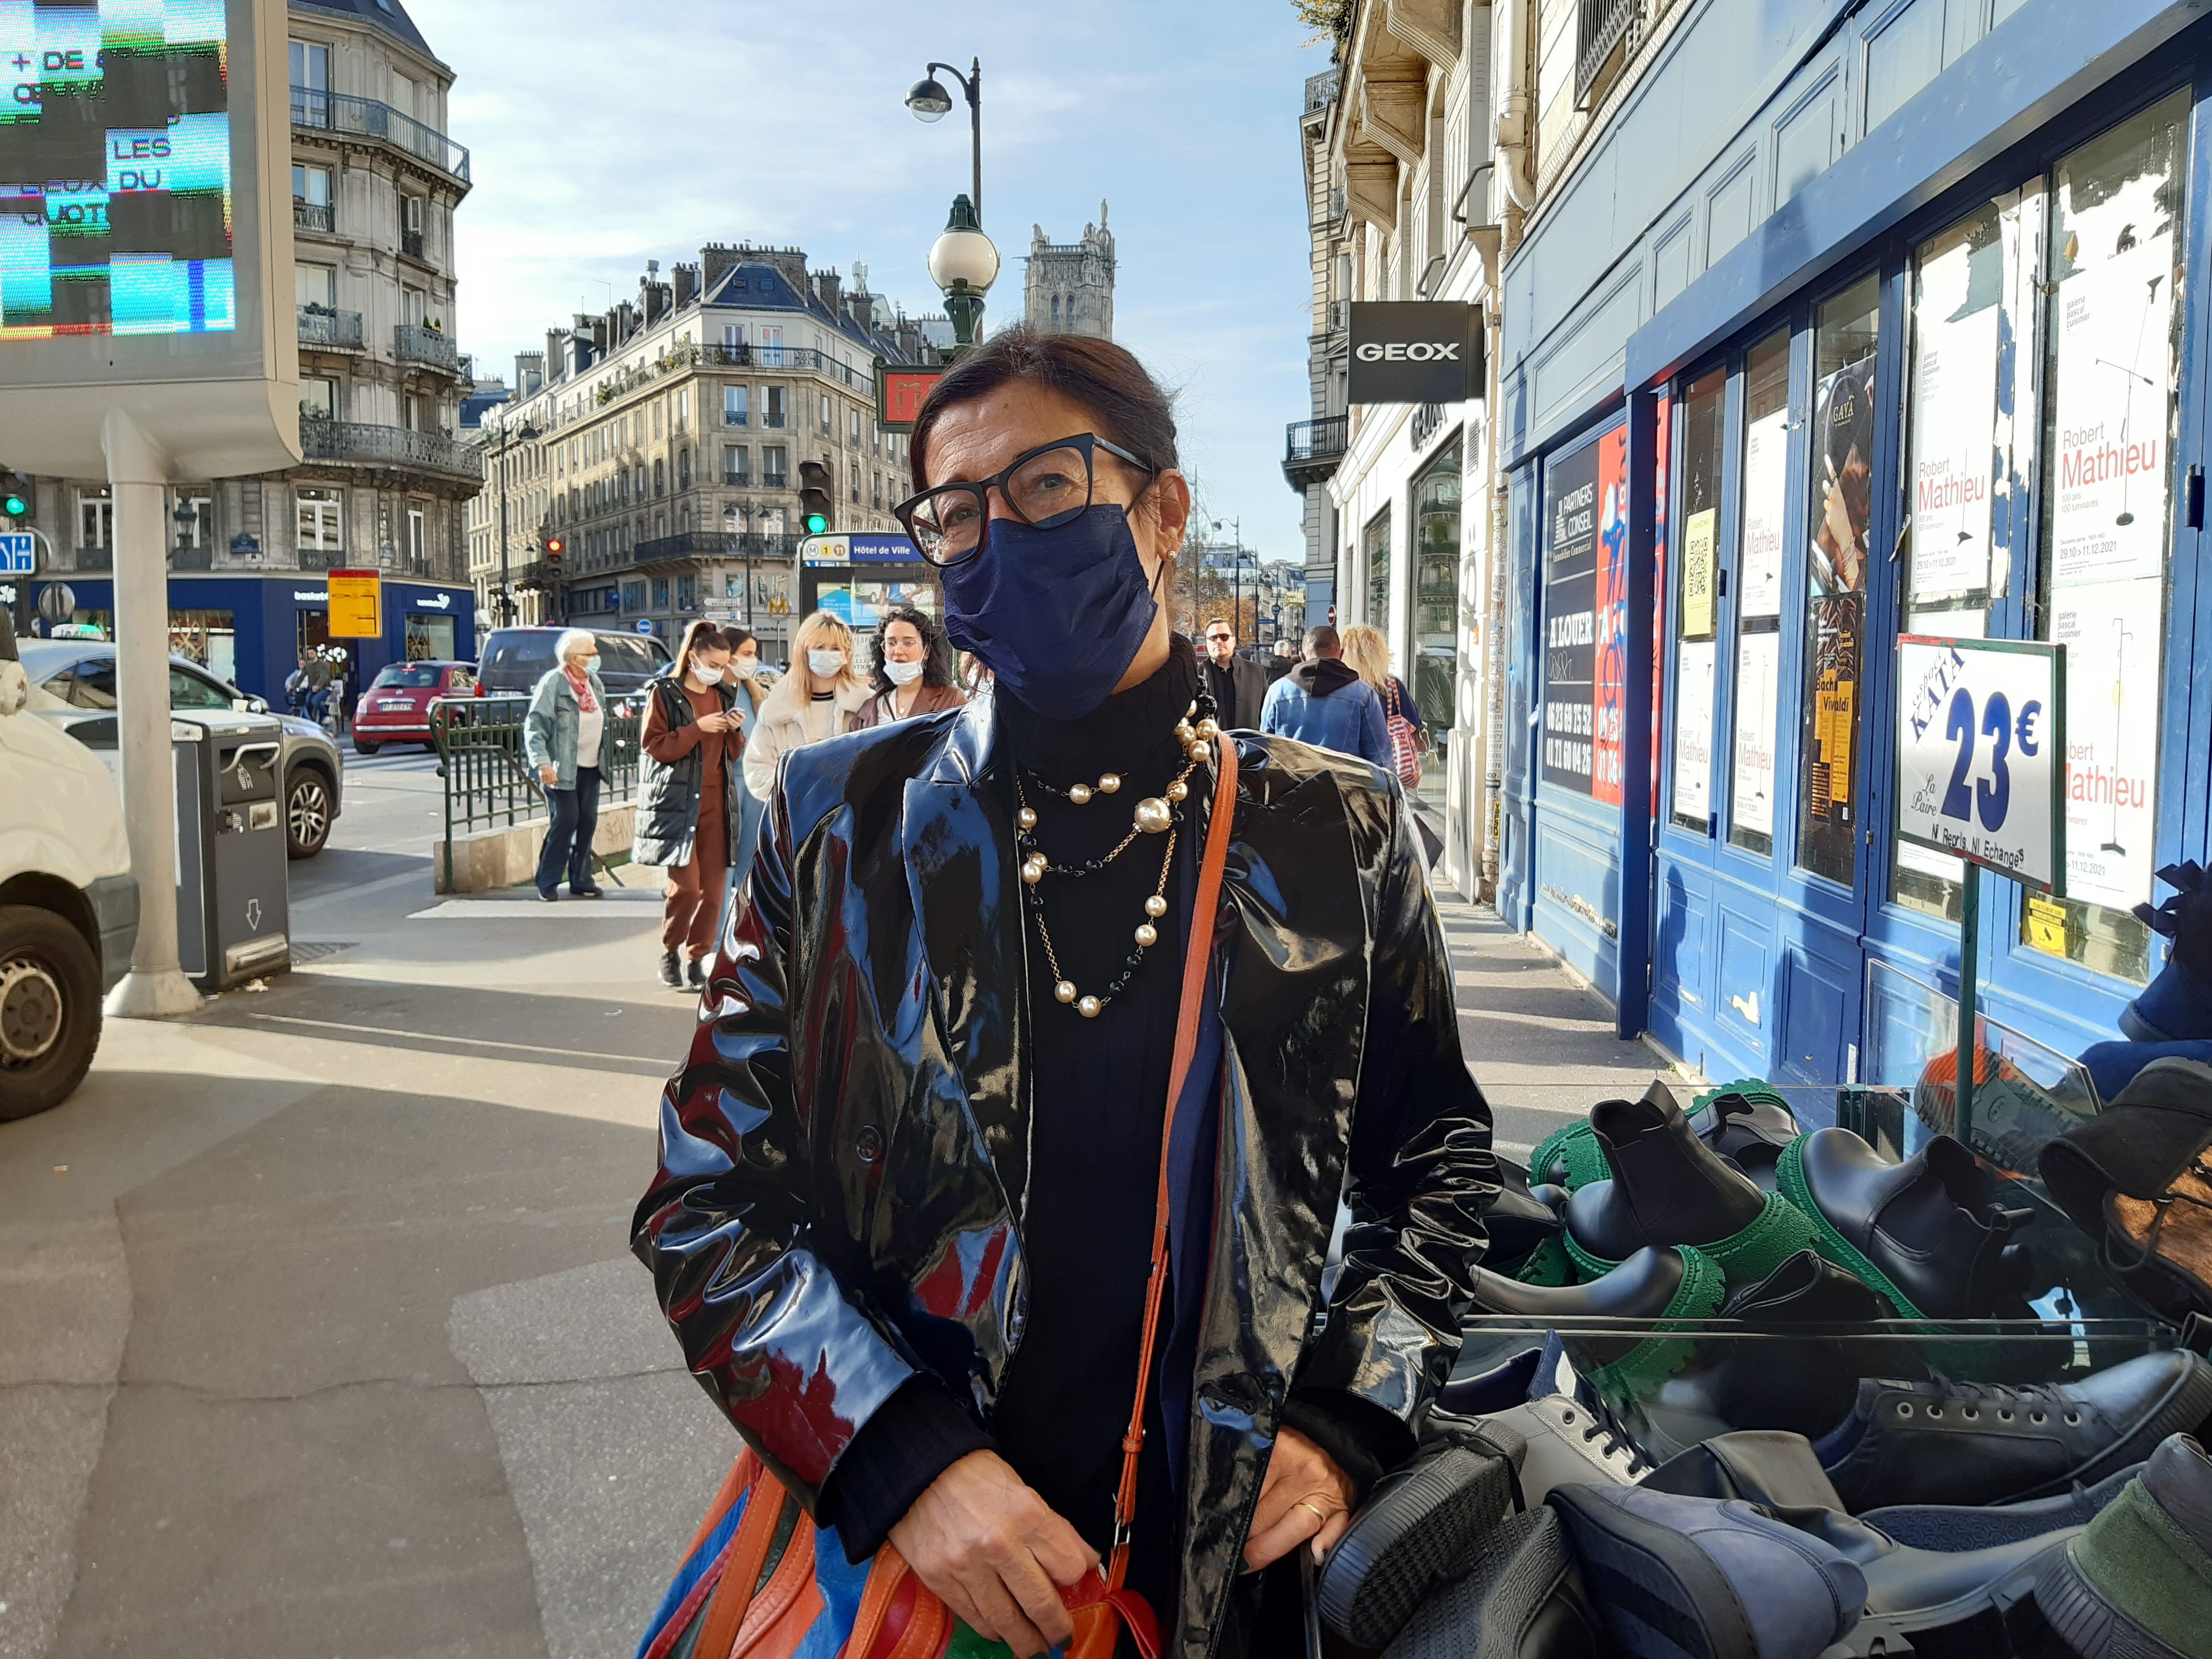 Yolande, ancienne habitante du Marais, reproche à la maire de Paris d'avoir chassé les voitures trop brutalement, dissuadant ainsi les familles franciliennes de venir faire du shopping dans la capitale. LP/Christine Henry